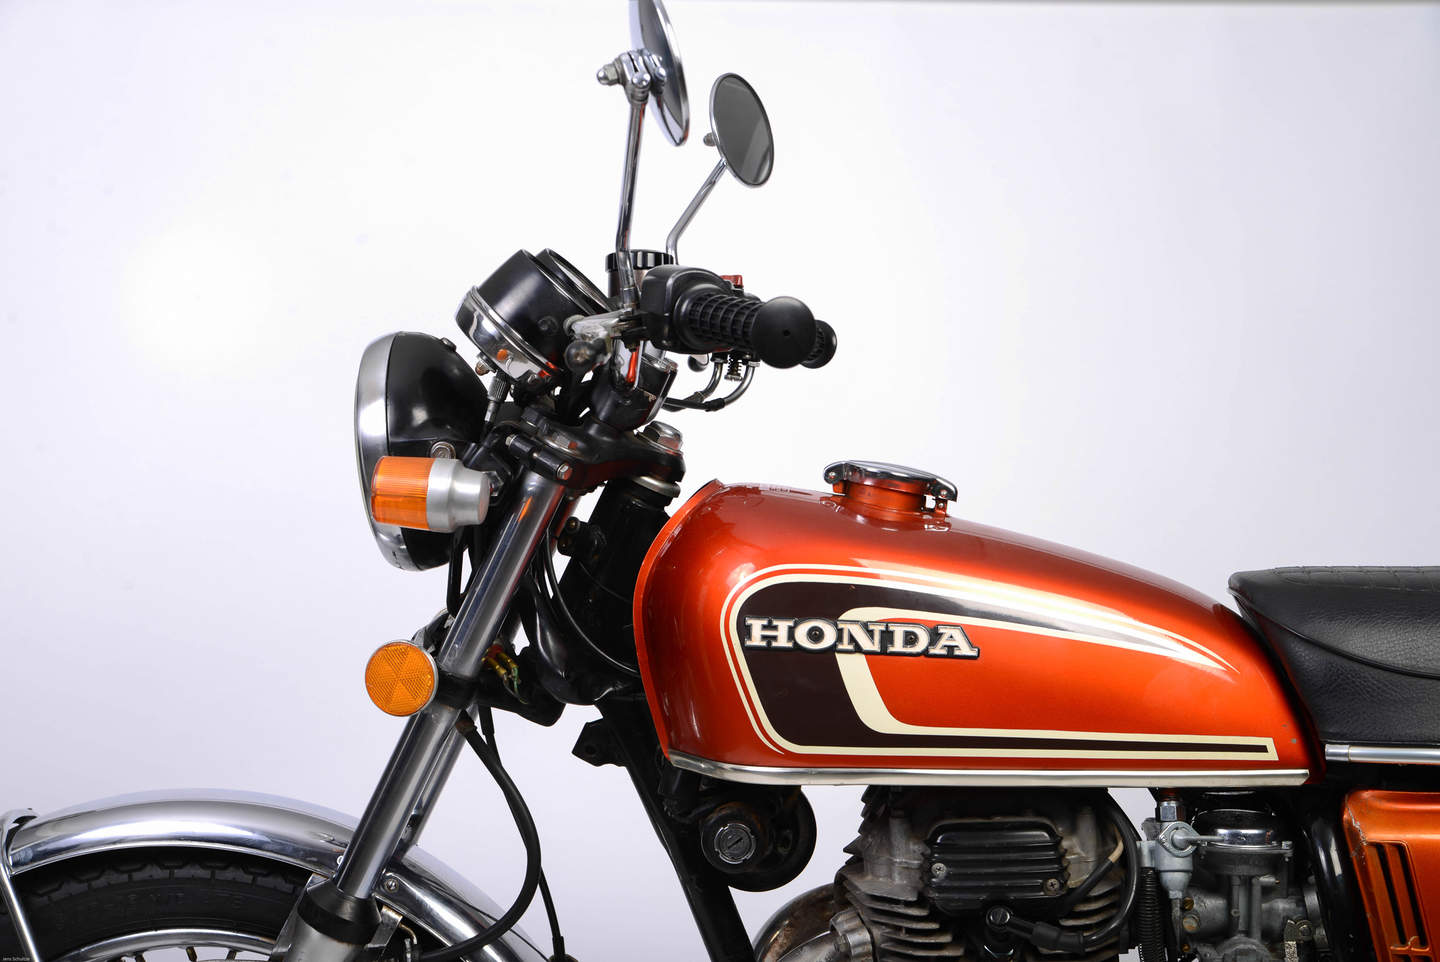 Honda CB 250 K (1967 - 1976) - meistverkaufte 250er Maschine